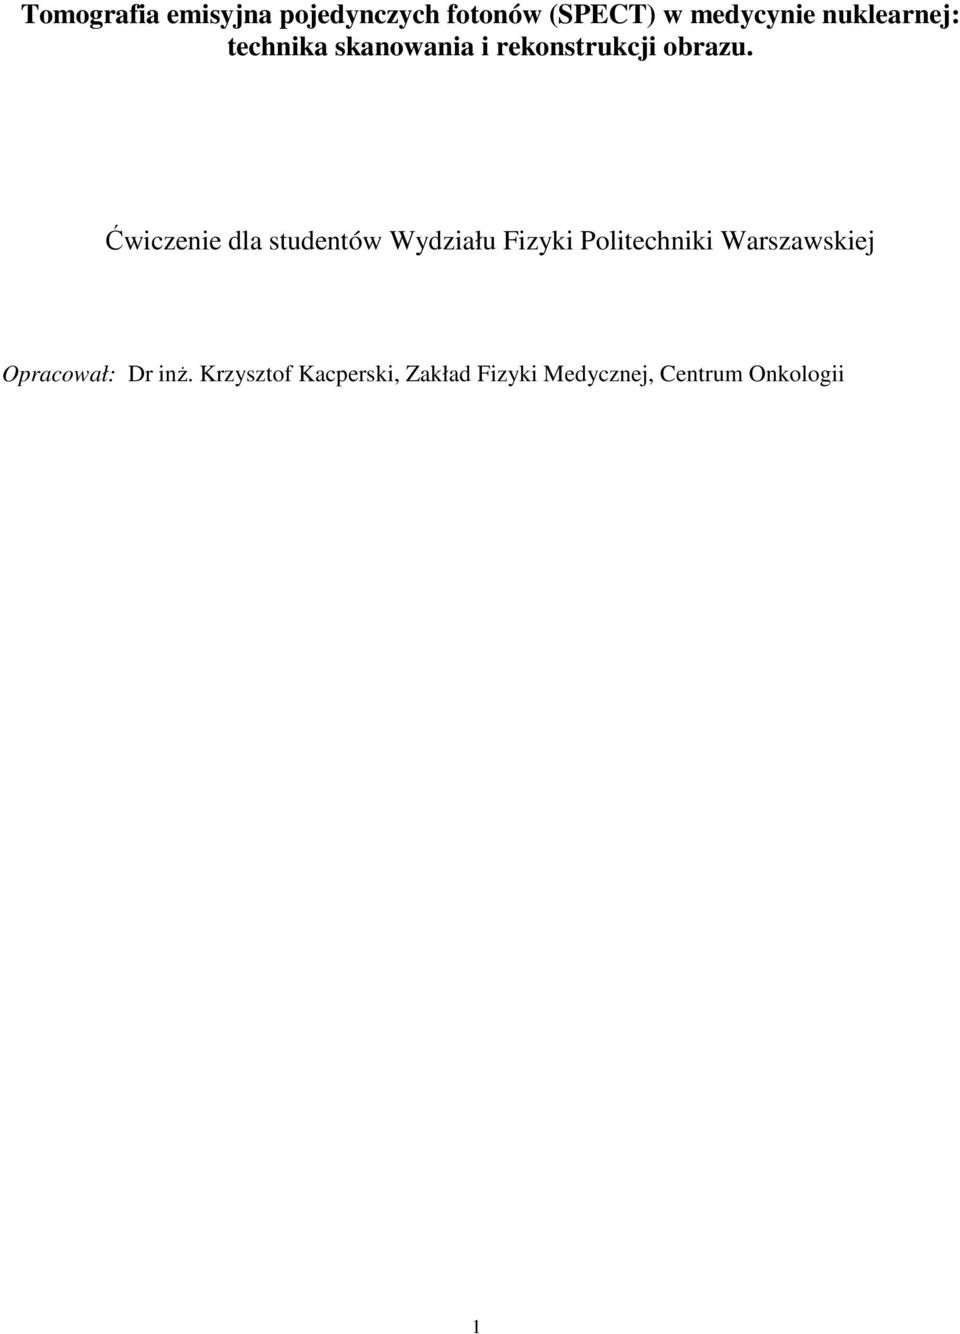 Ćwiczenie dla studentów Wydziału Fizyki Politechniki Warszawskiej